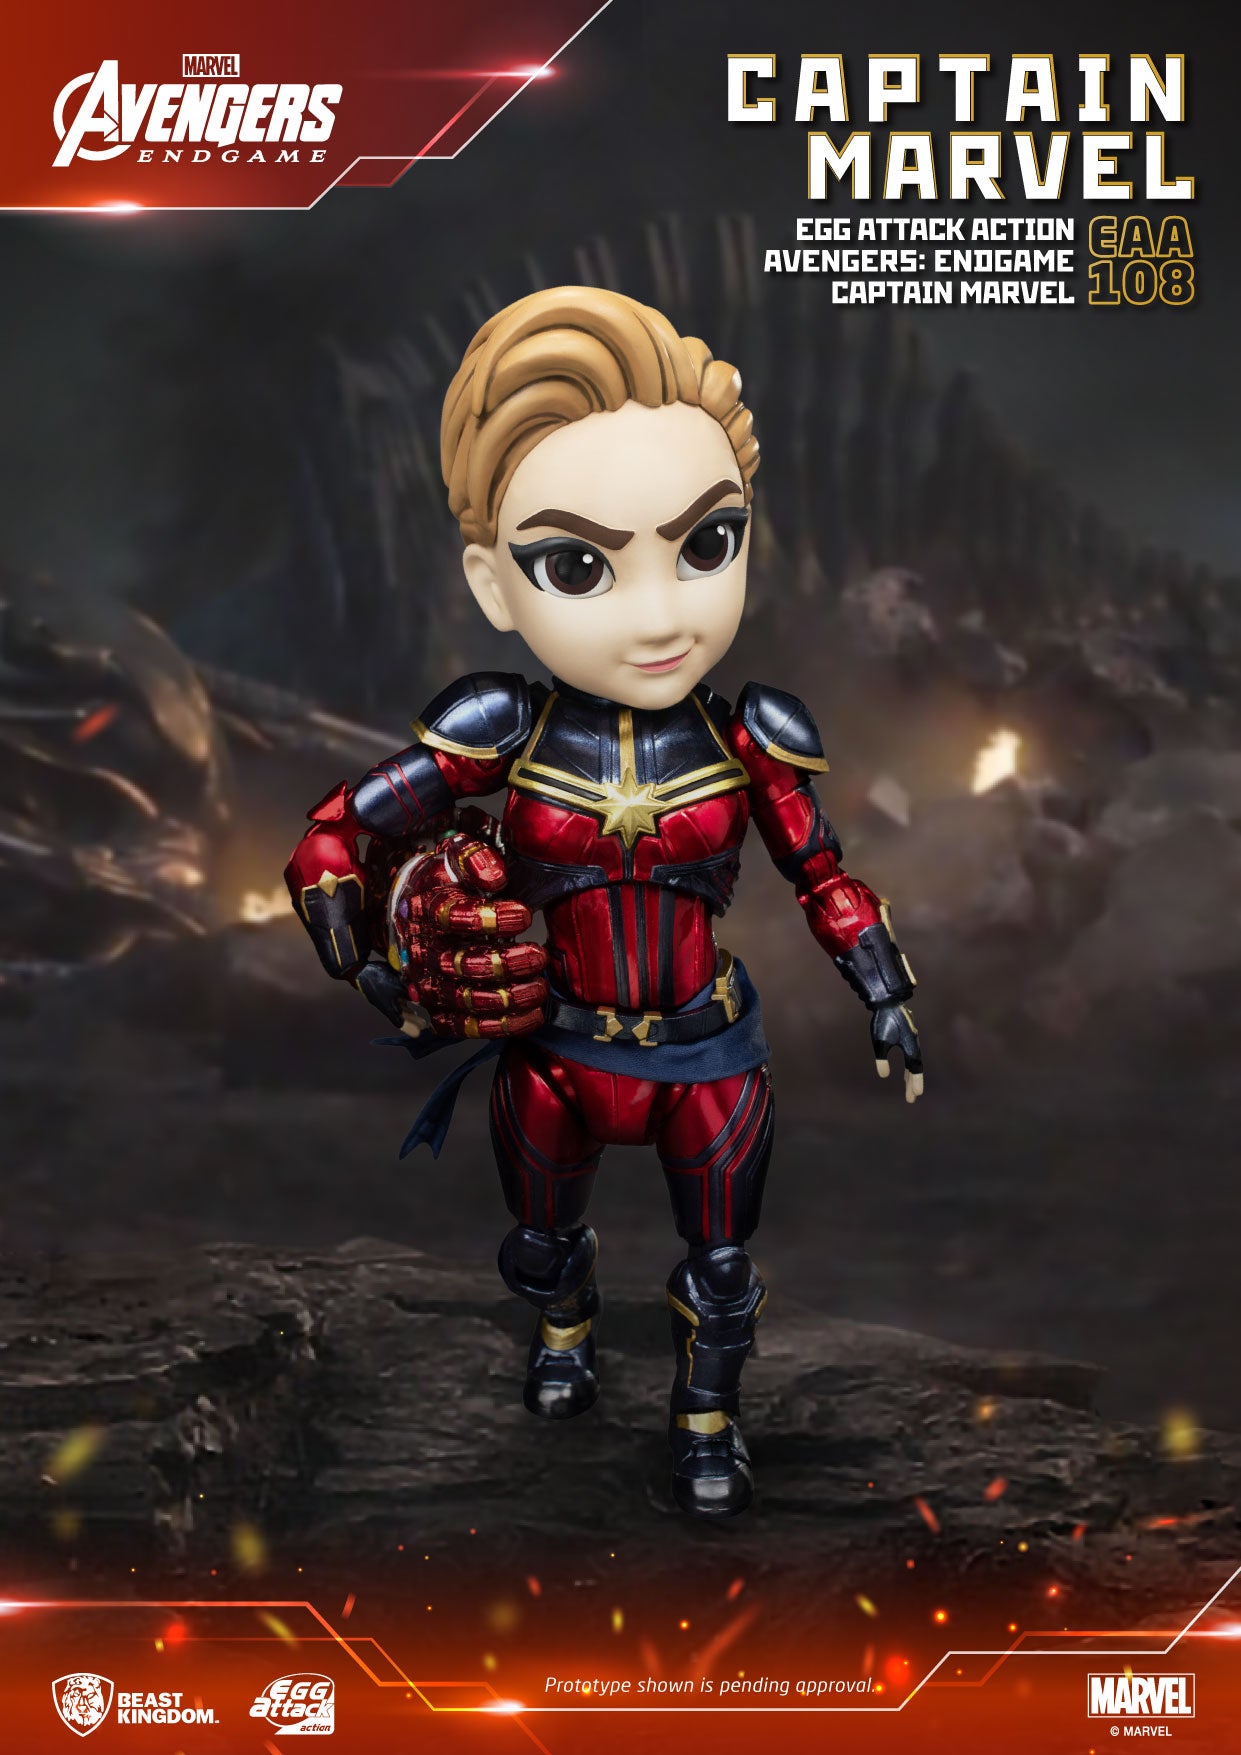 Avengers: Endgame Captain Marvel EAA-108 BEAST KINGDOM